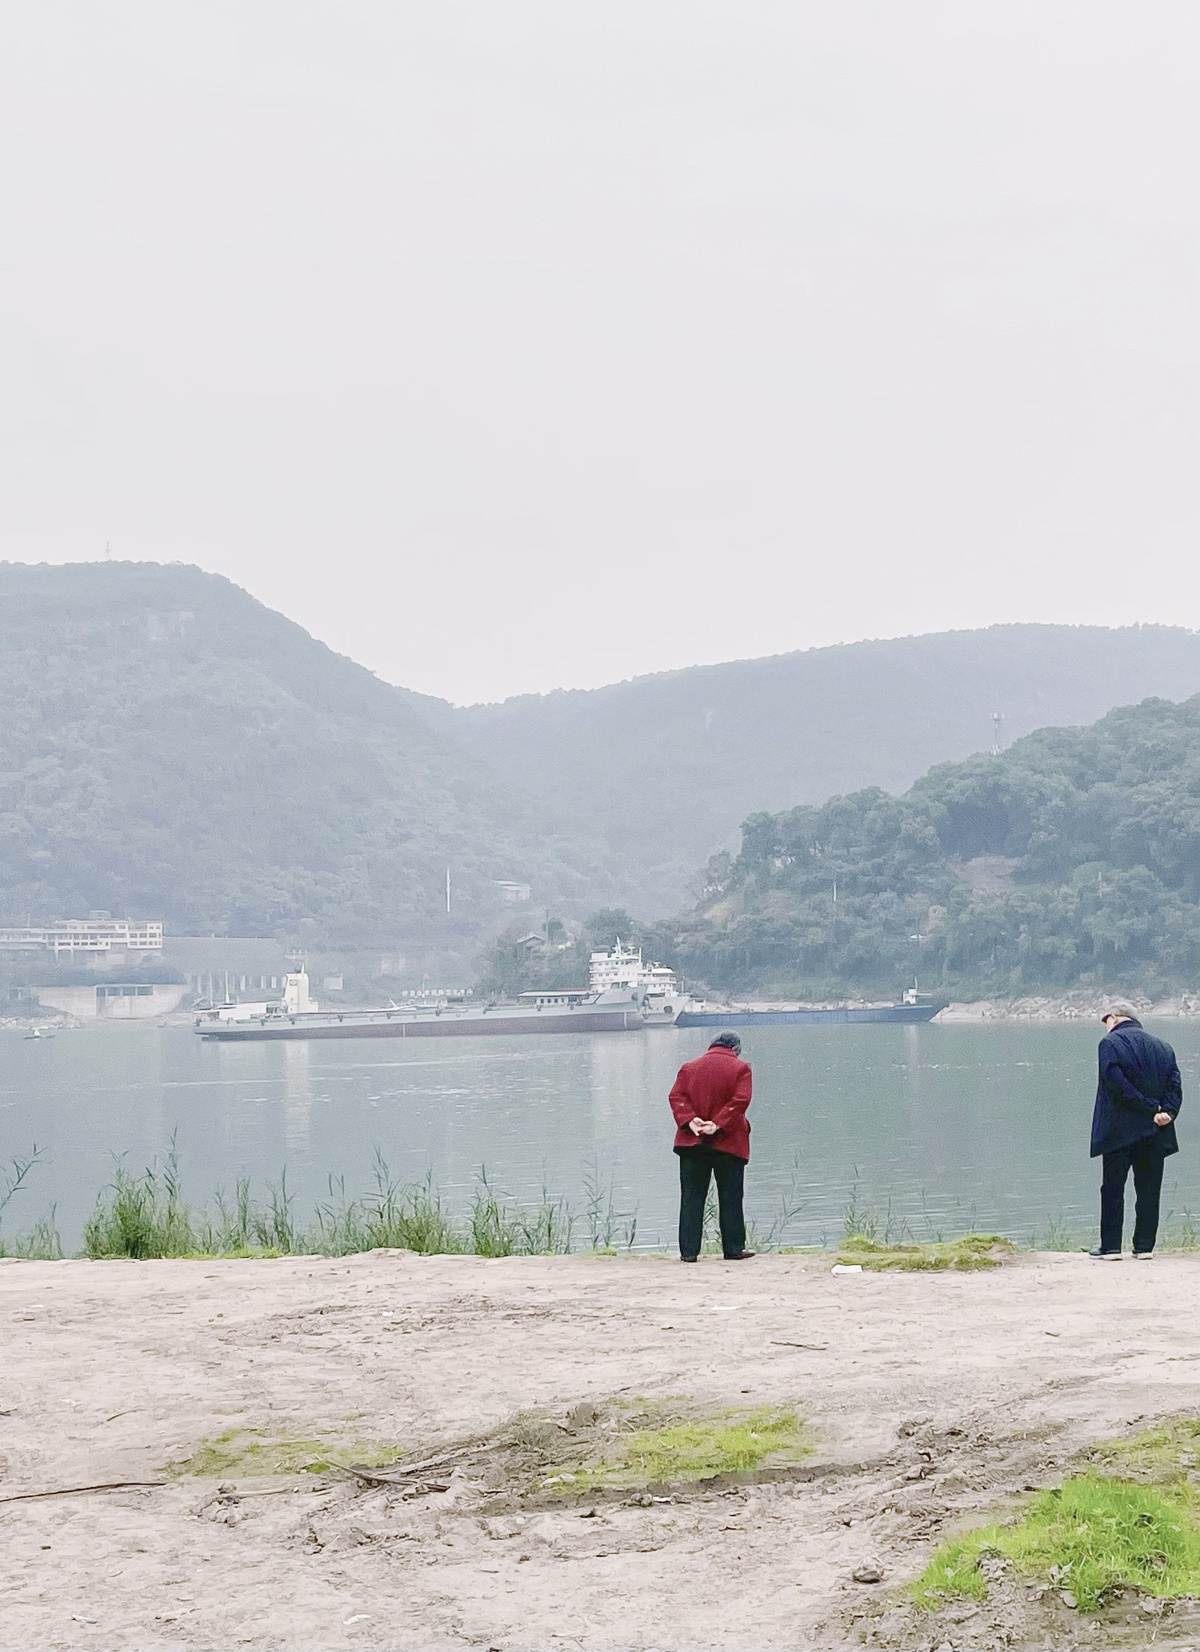 几名男子站在有山丘和船只远处的水边 手里拿着伞。